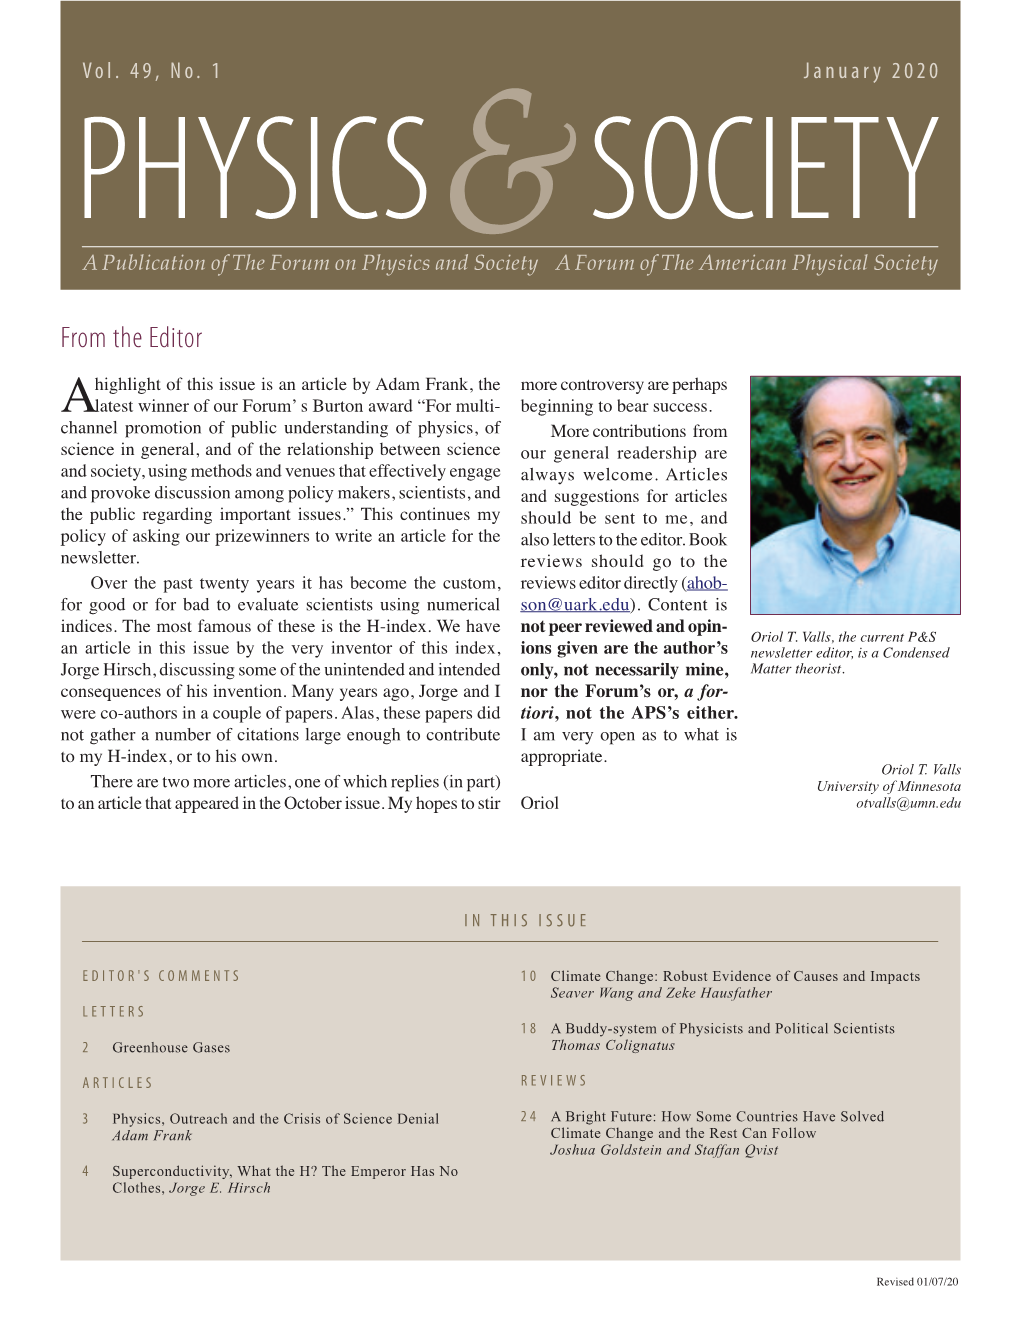 Physics & Society Newsletter, Vol. 49, No. 1